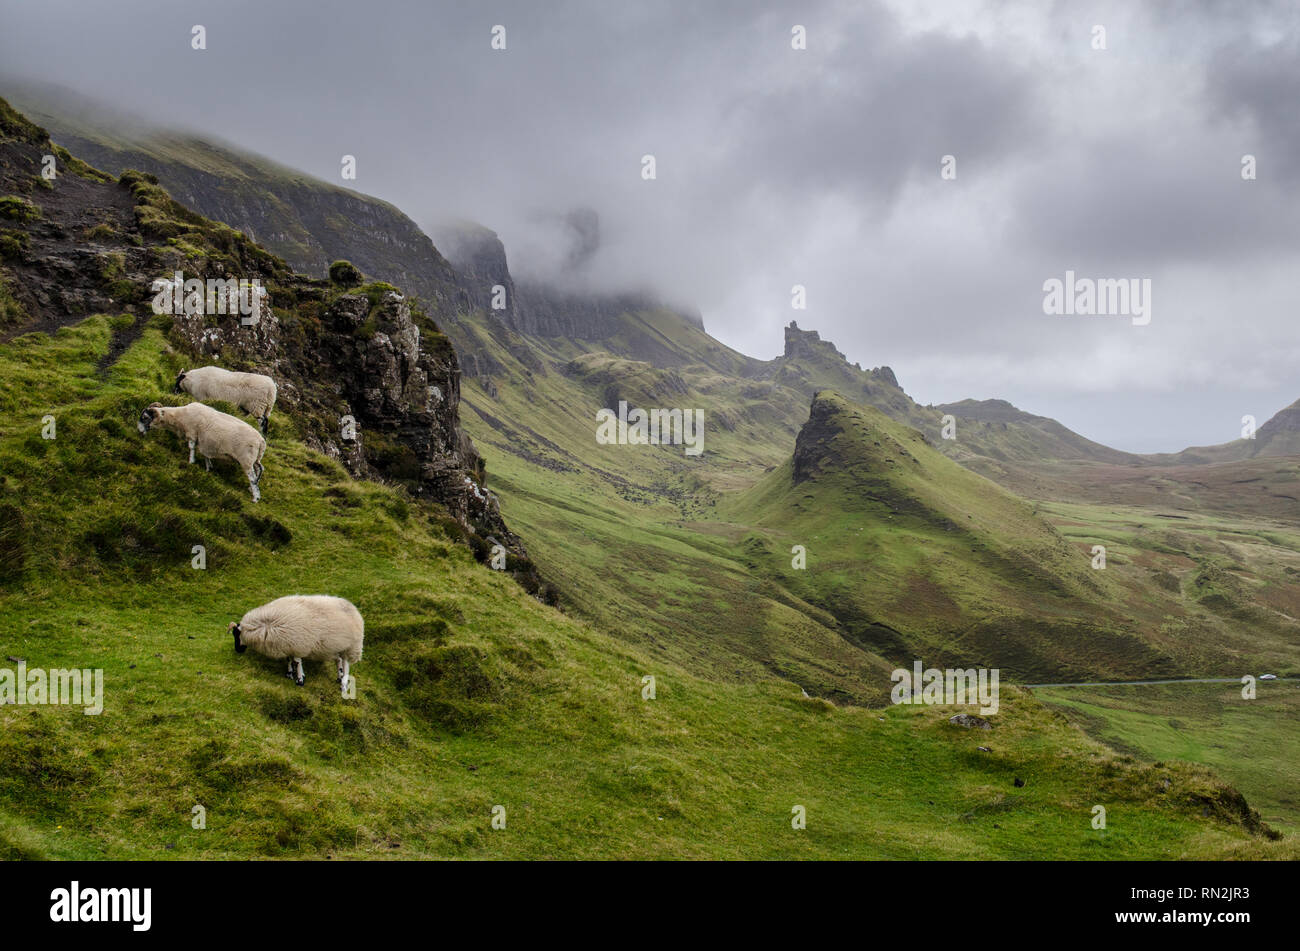 Drei Schafe grasen hoch an den Hängen des Quiraing, einem Berg Bergsturz Relief auf der Trotternish Halbinsel der schottischen Insel Skye. Stockfoto